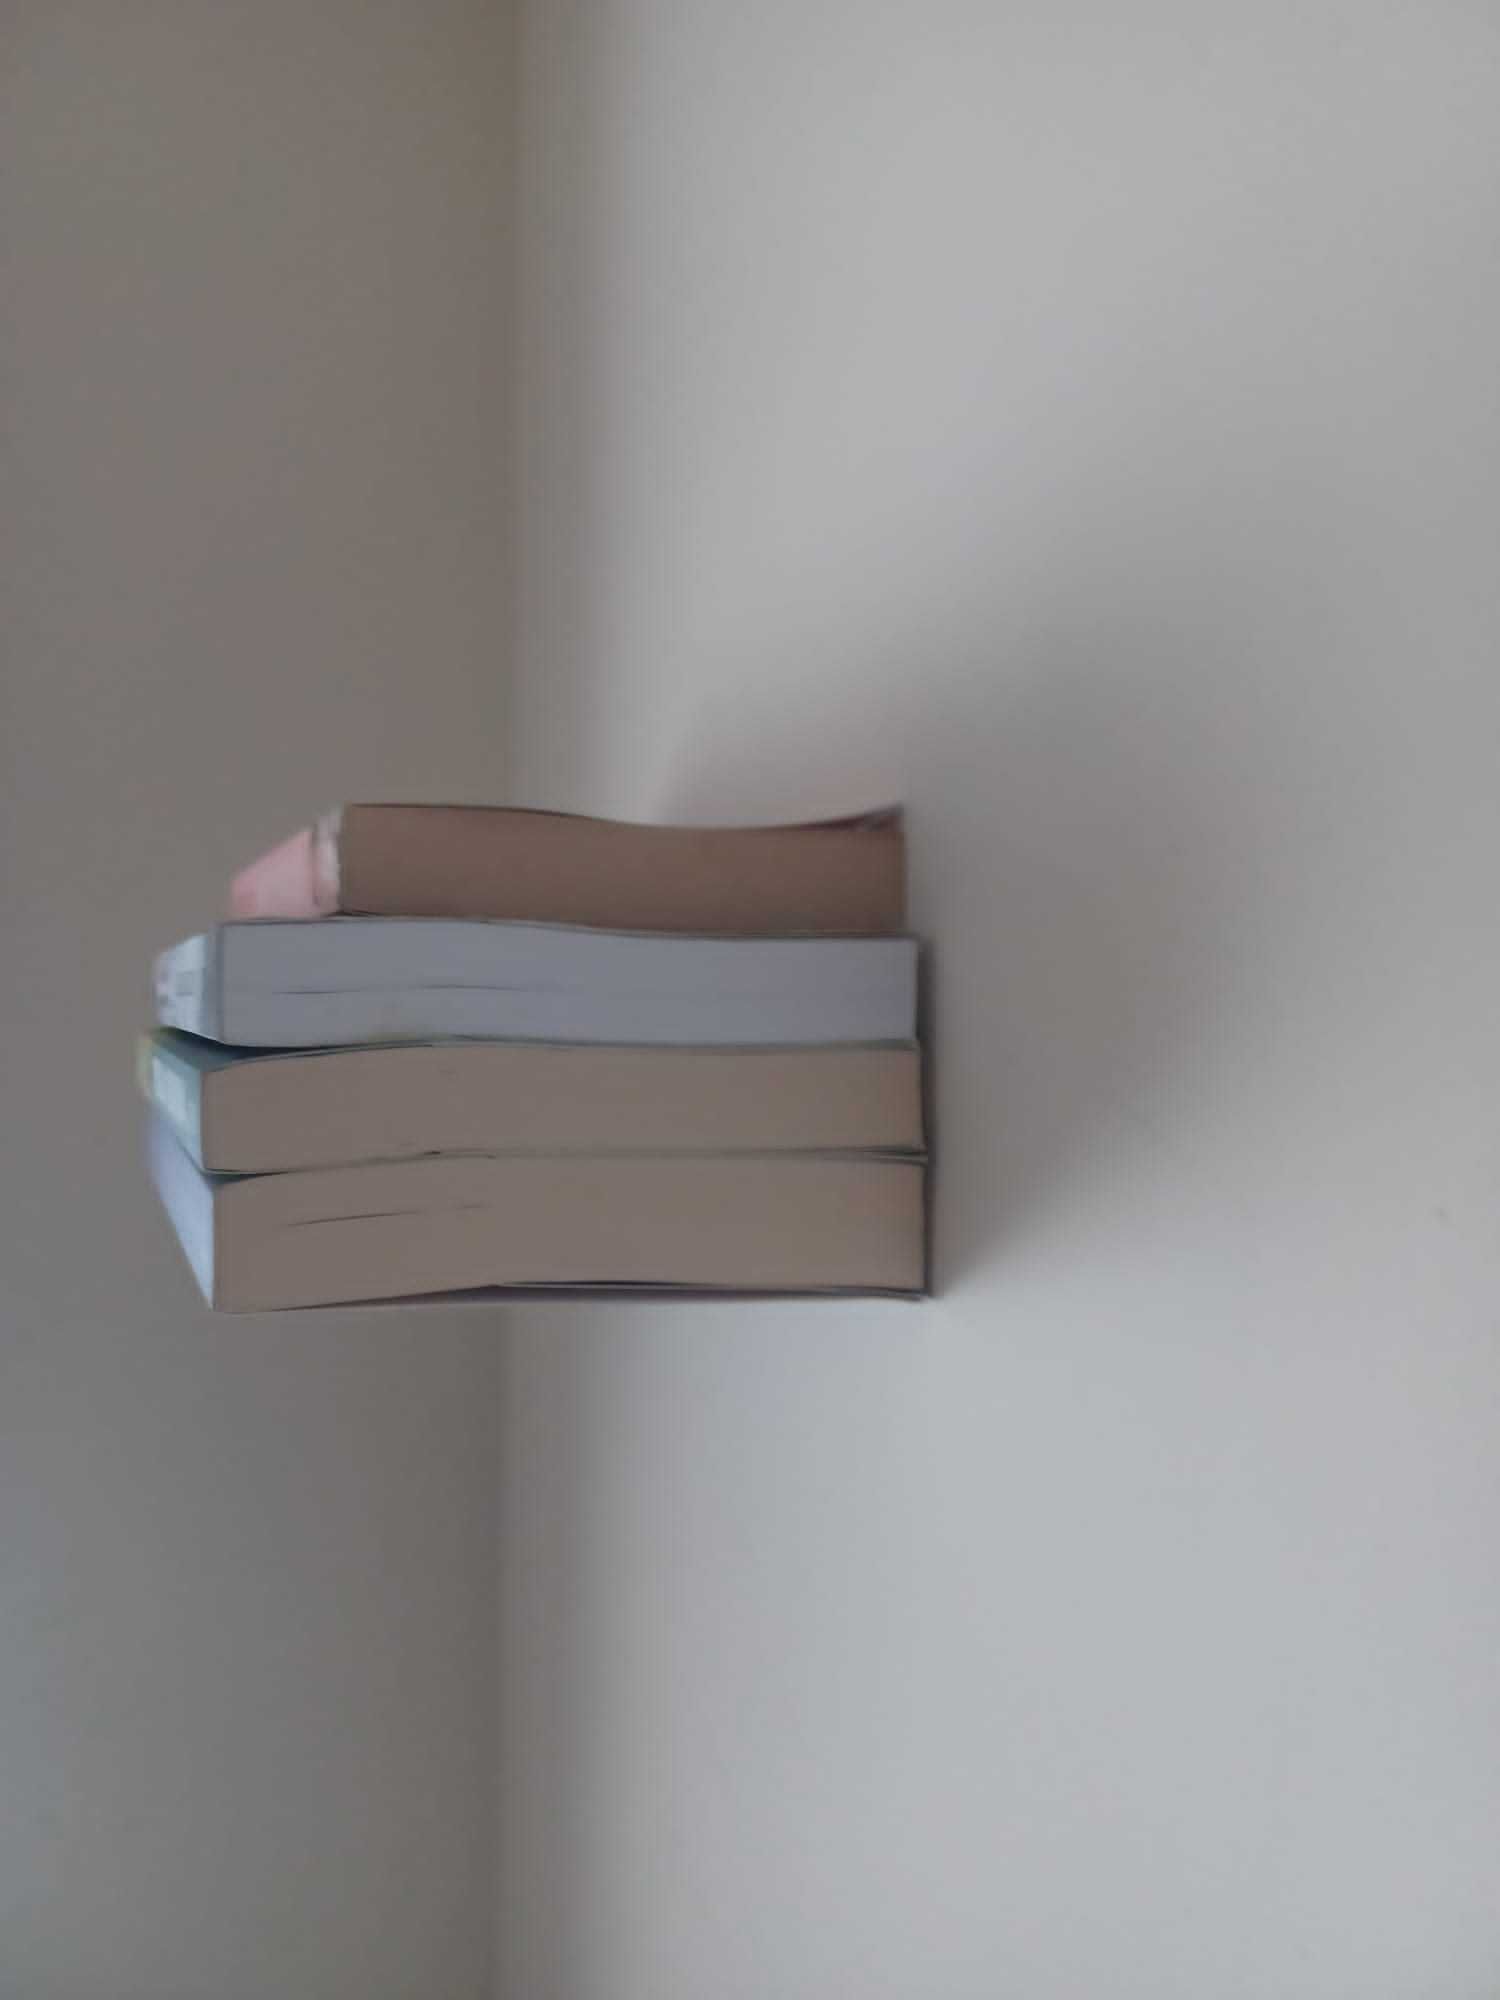 Estantes para livros invisíveis